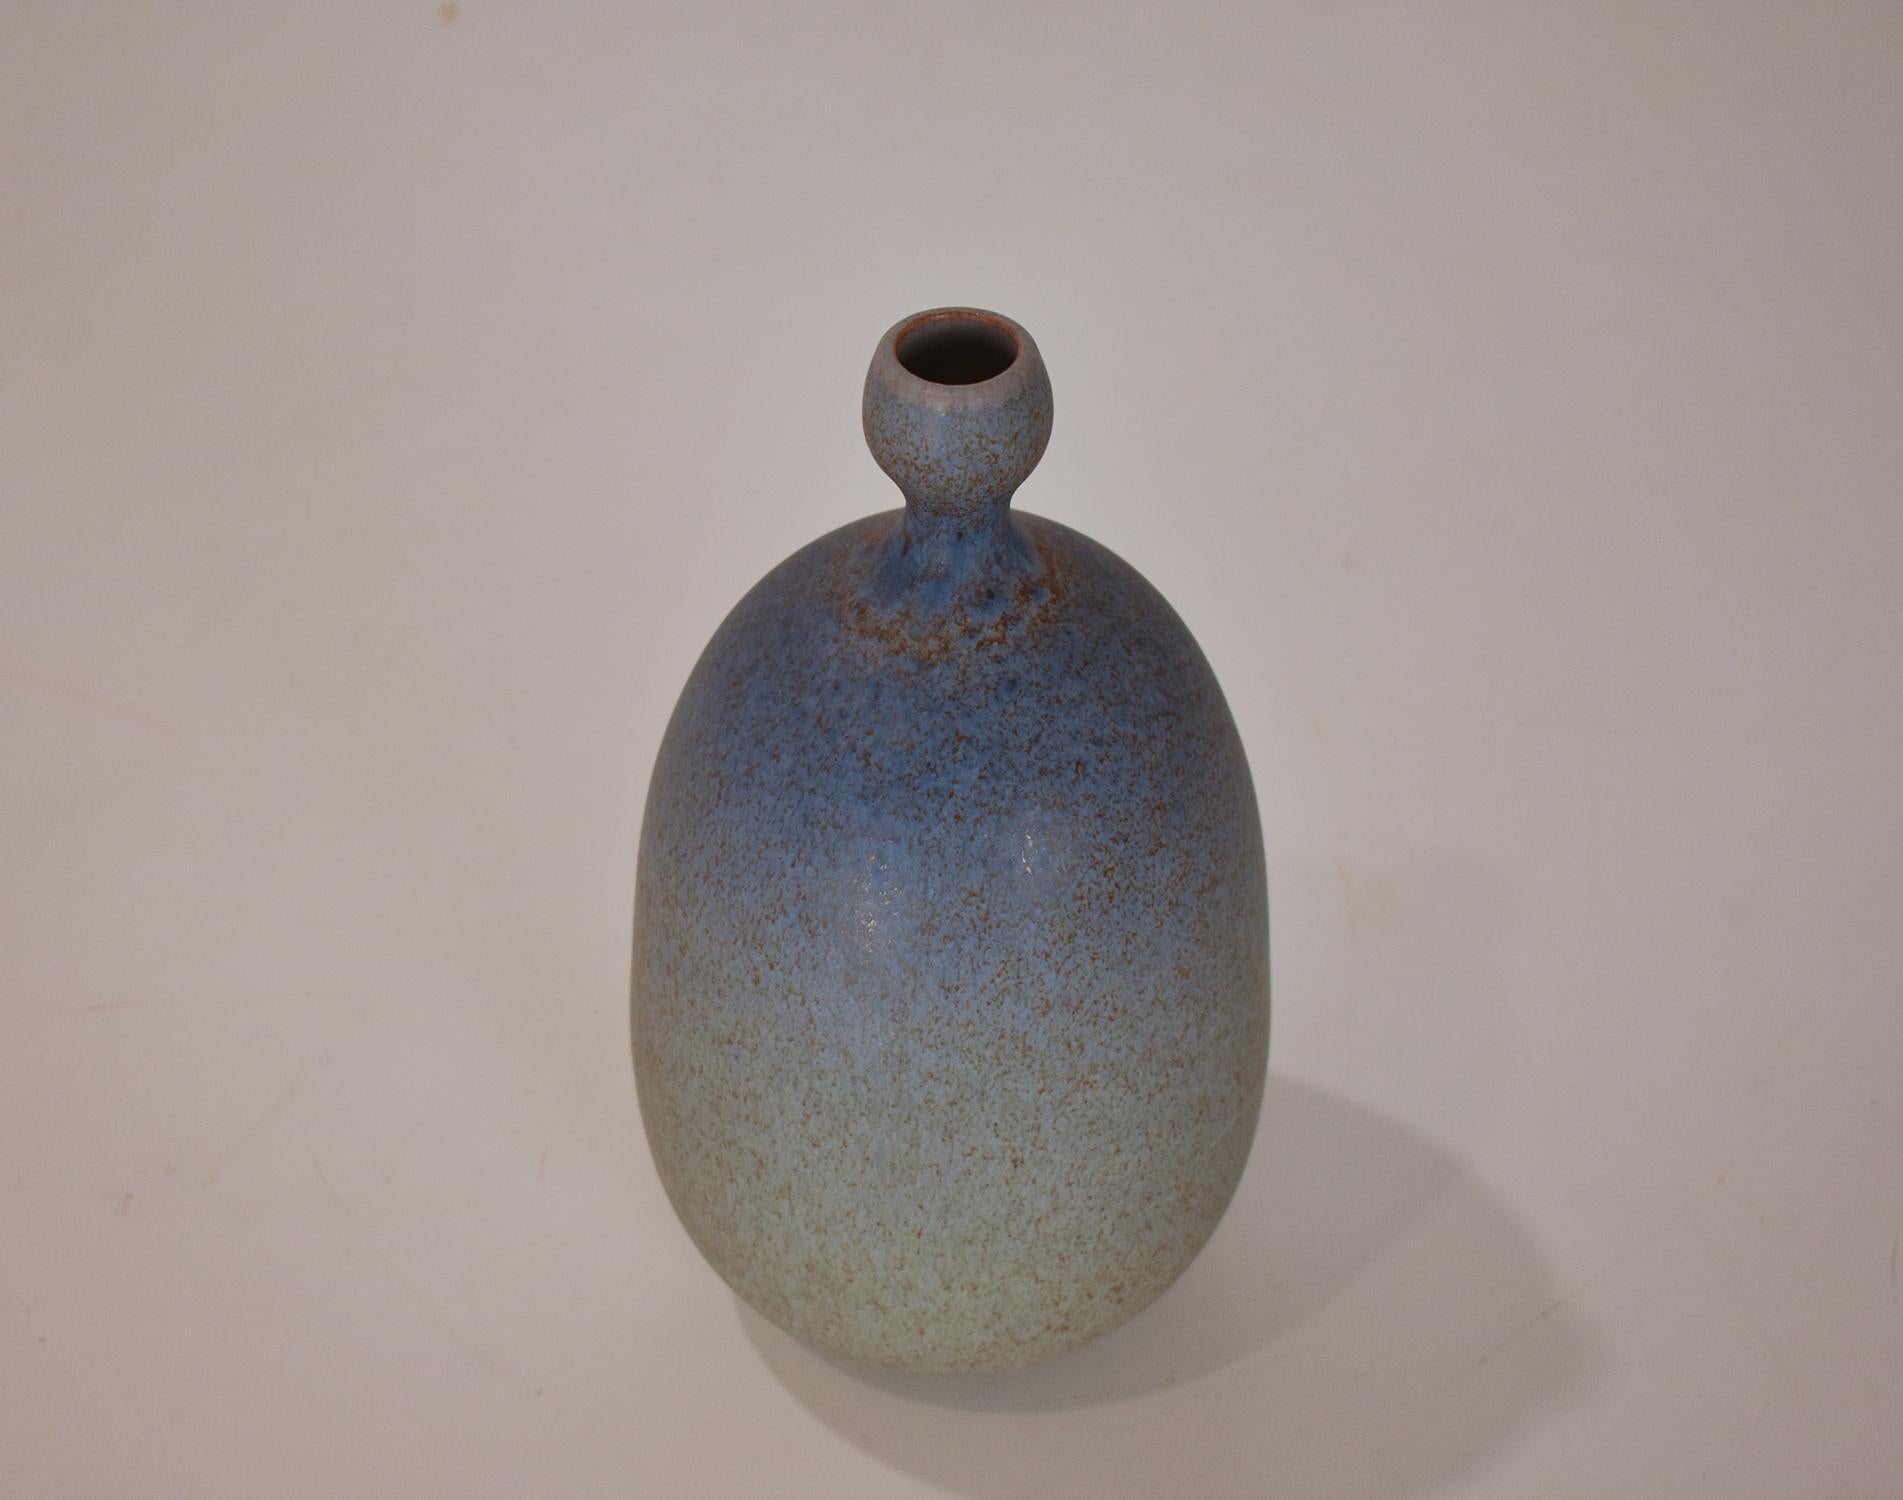 Die Keramik in Blautönen von Joan Carrillo mit einer Höhe von 21 cm und einem Durchmesser von 11 cm ist ein außergewöhnlich schönes und detailliertes Werk. Das Stück ist vom Künstler signiert, was seine Authentizität zusätzlich unterstreicht